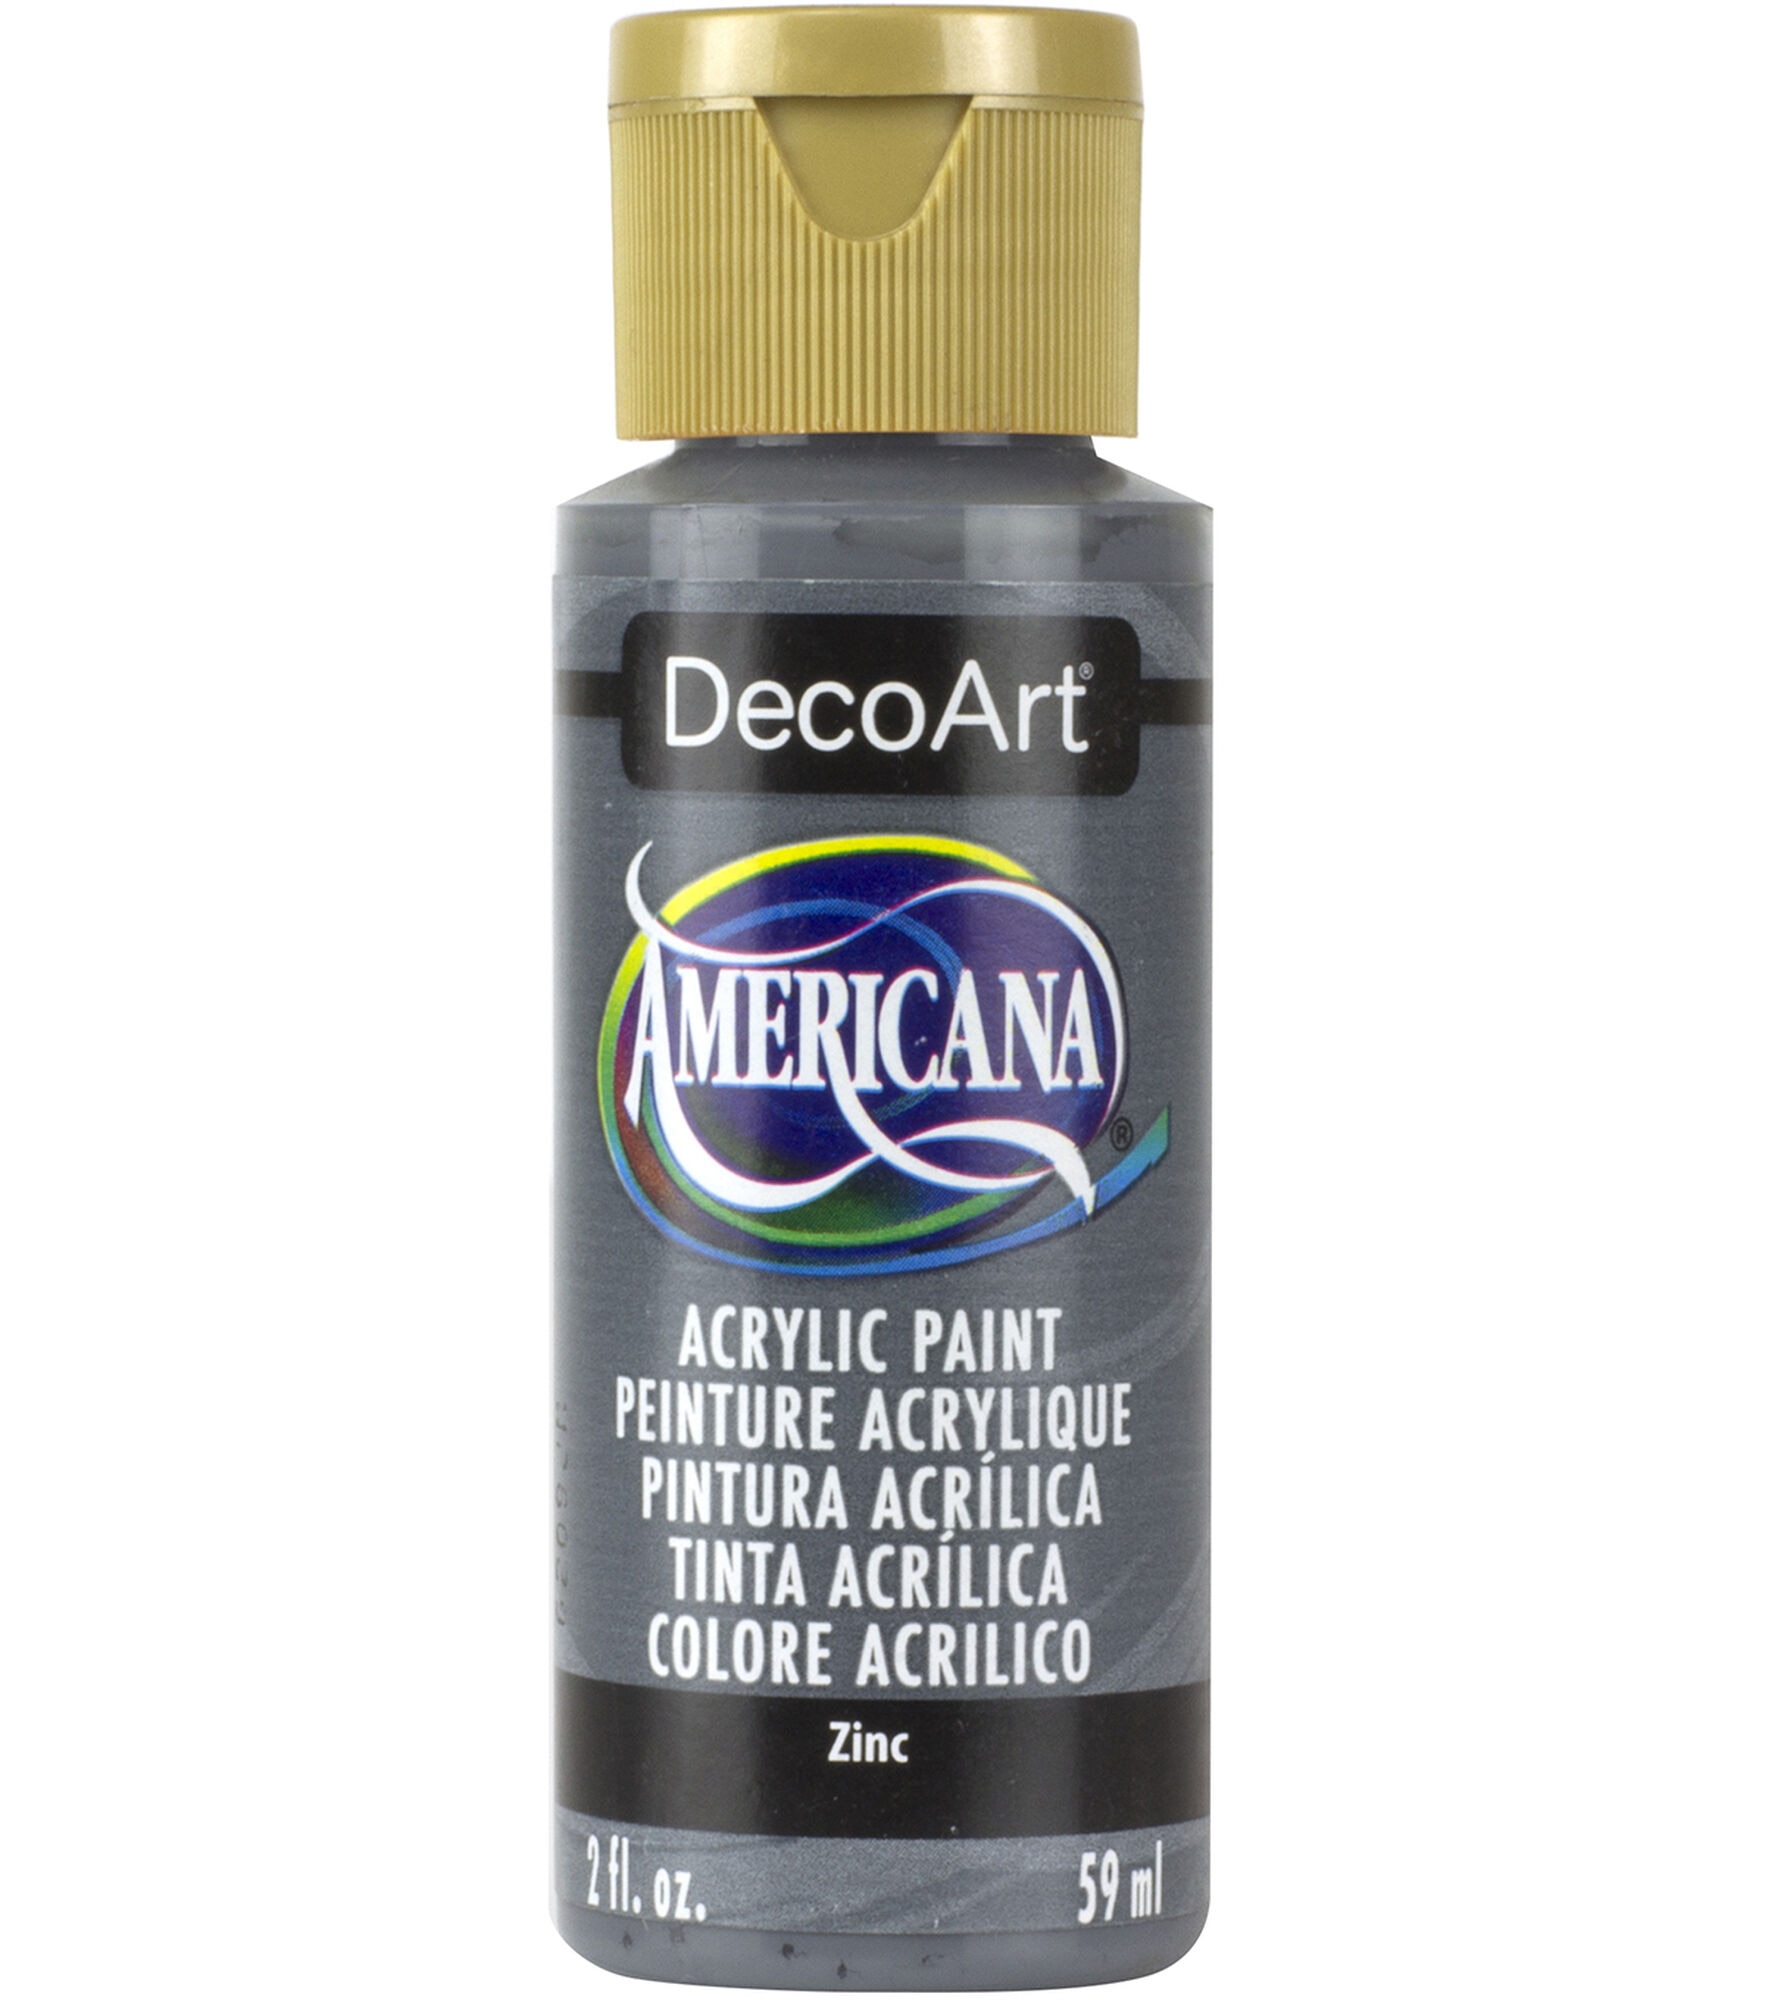 DecoArt Americana Acrylic 2oz Paint, Zinc, hi-res